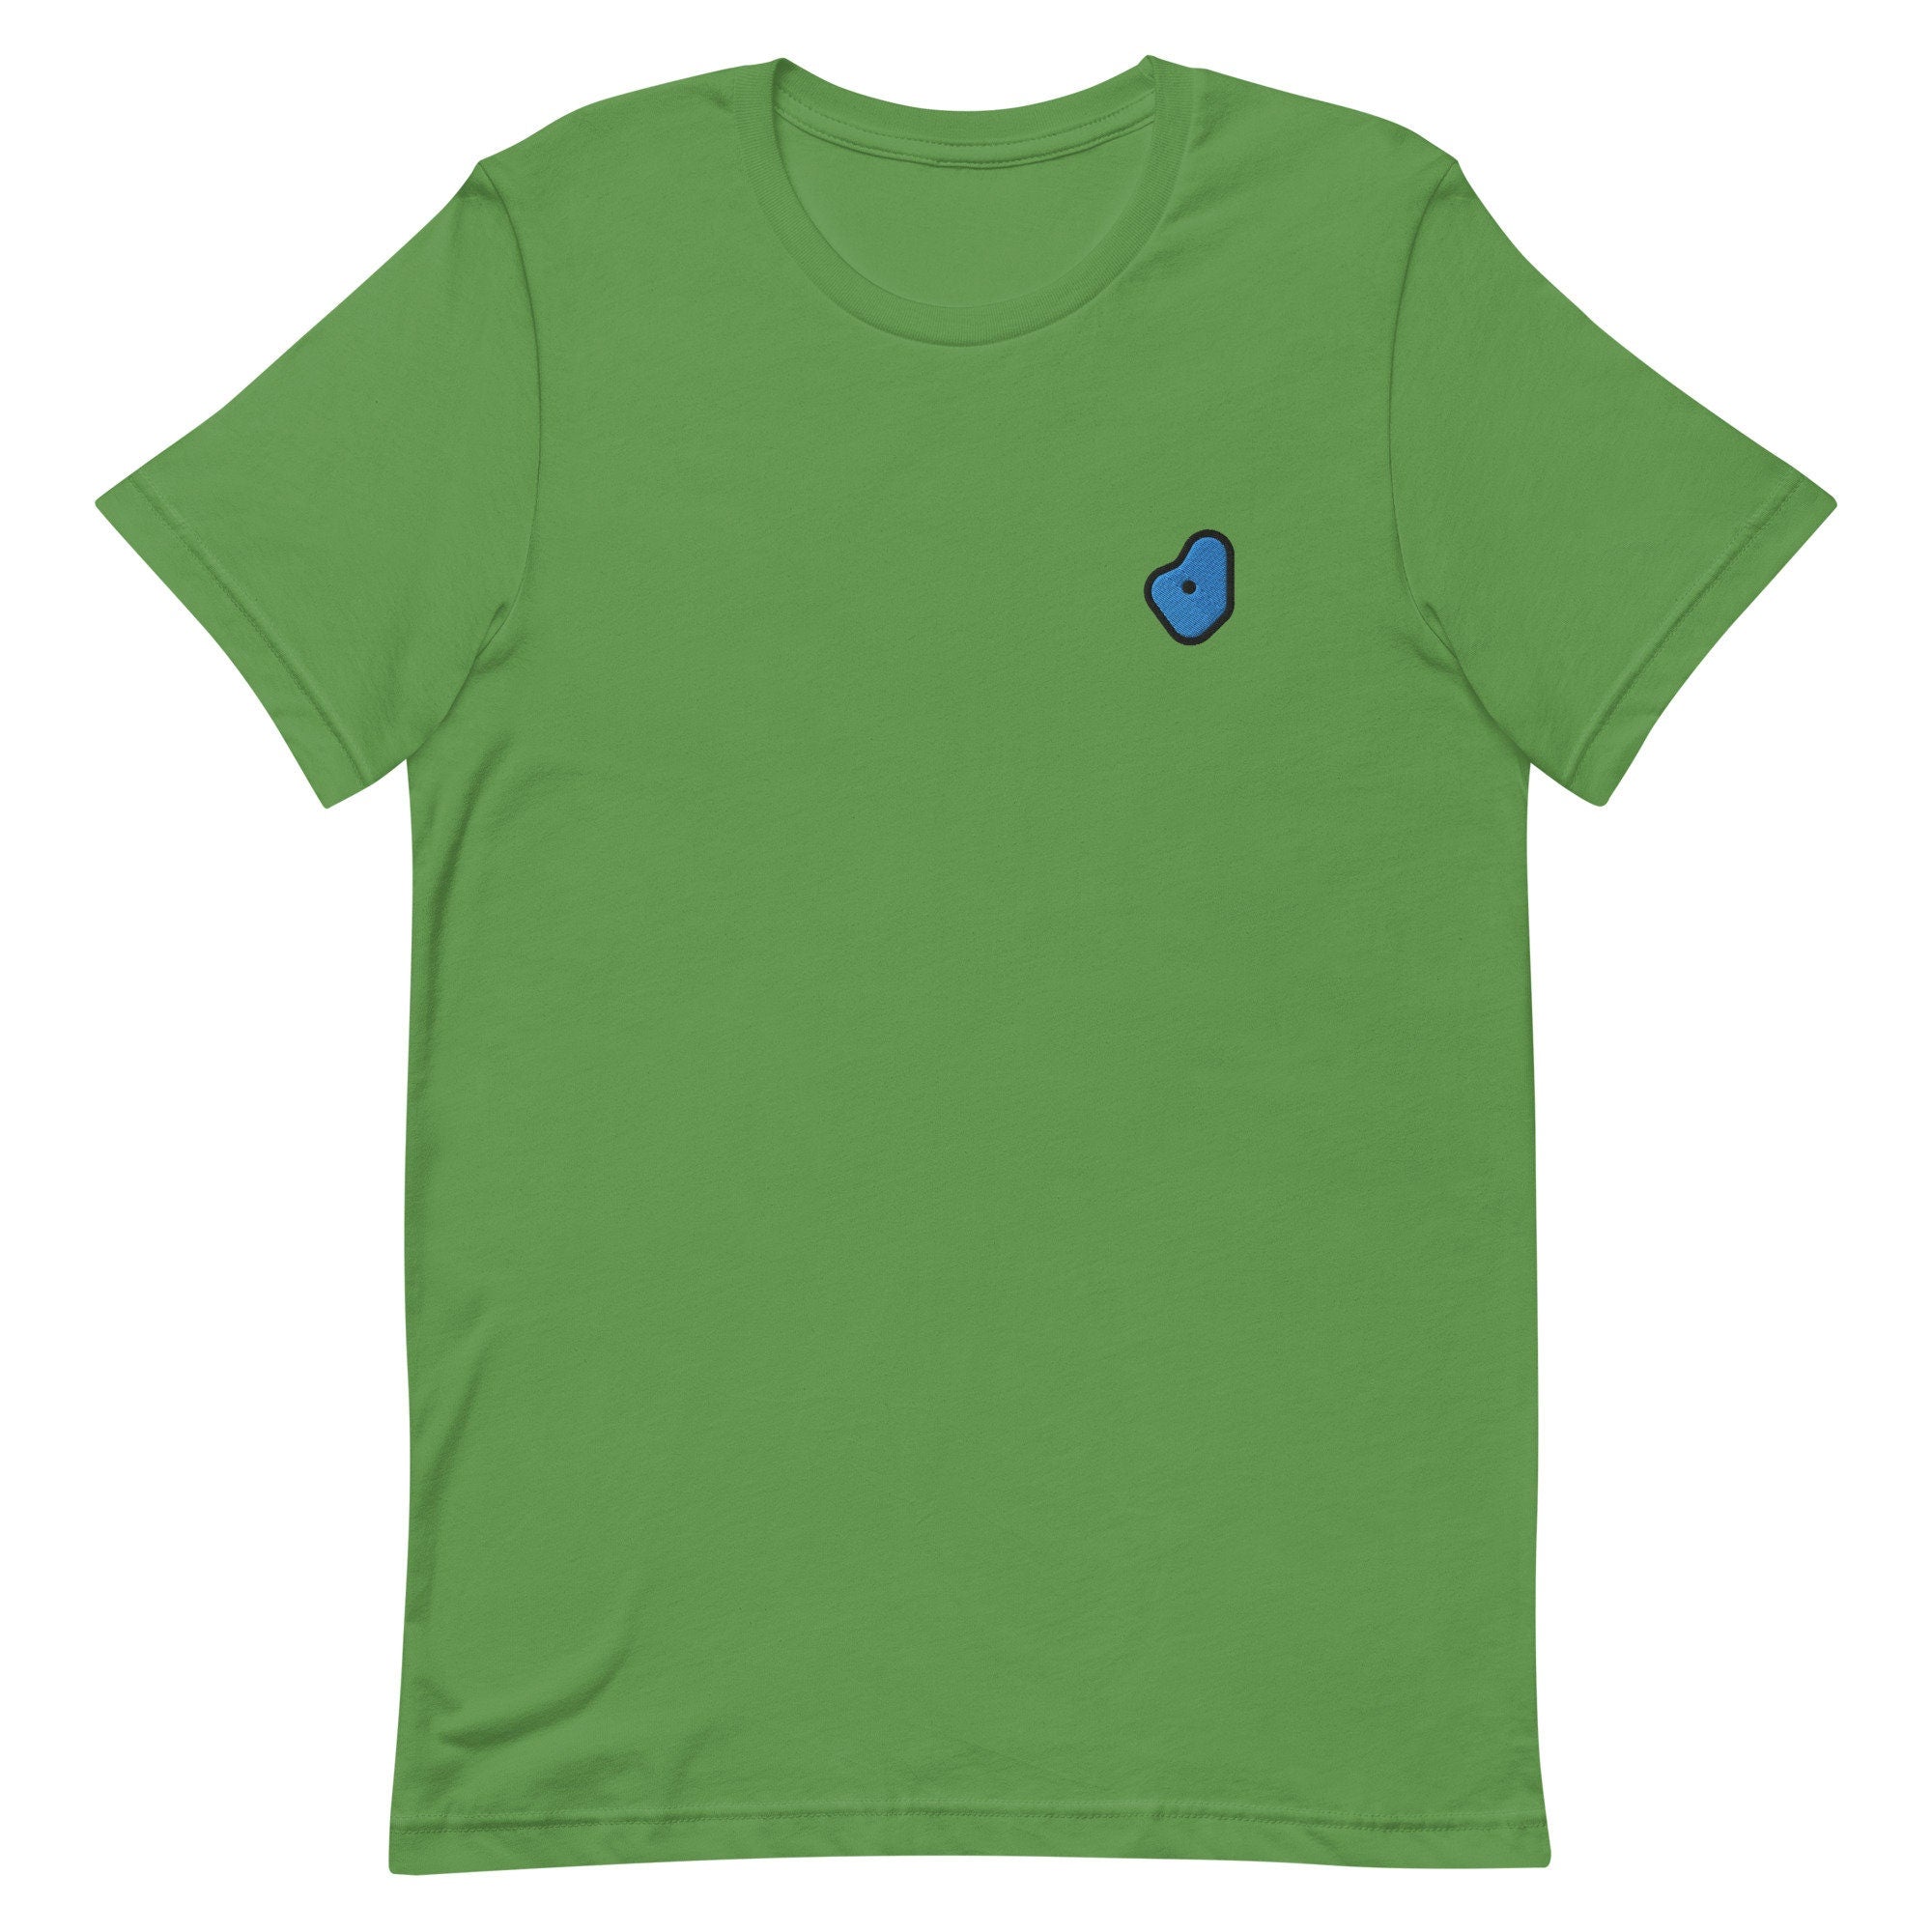 Bouldering Premium Men's T-Shirt, Embroidered Men's T-Shirt Gift for Boyfriend, Men's Short Sleeve Shirt - Multiple Colors